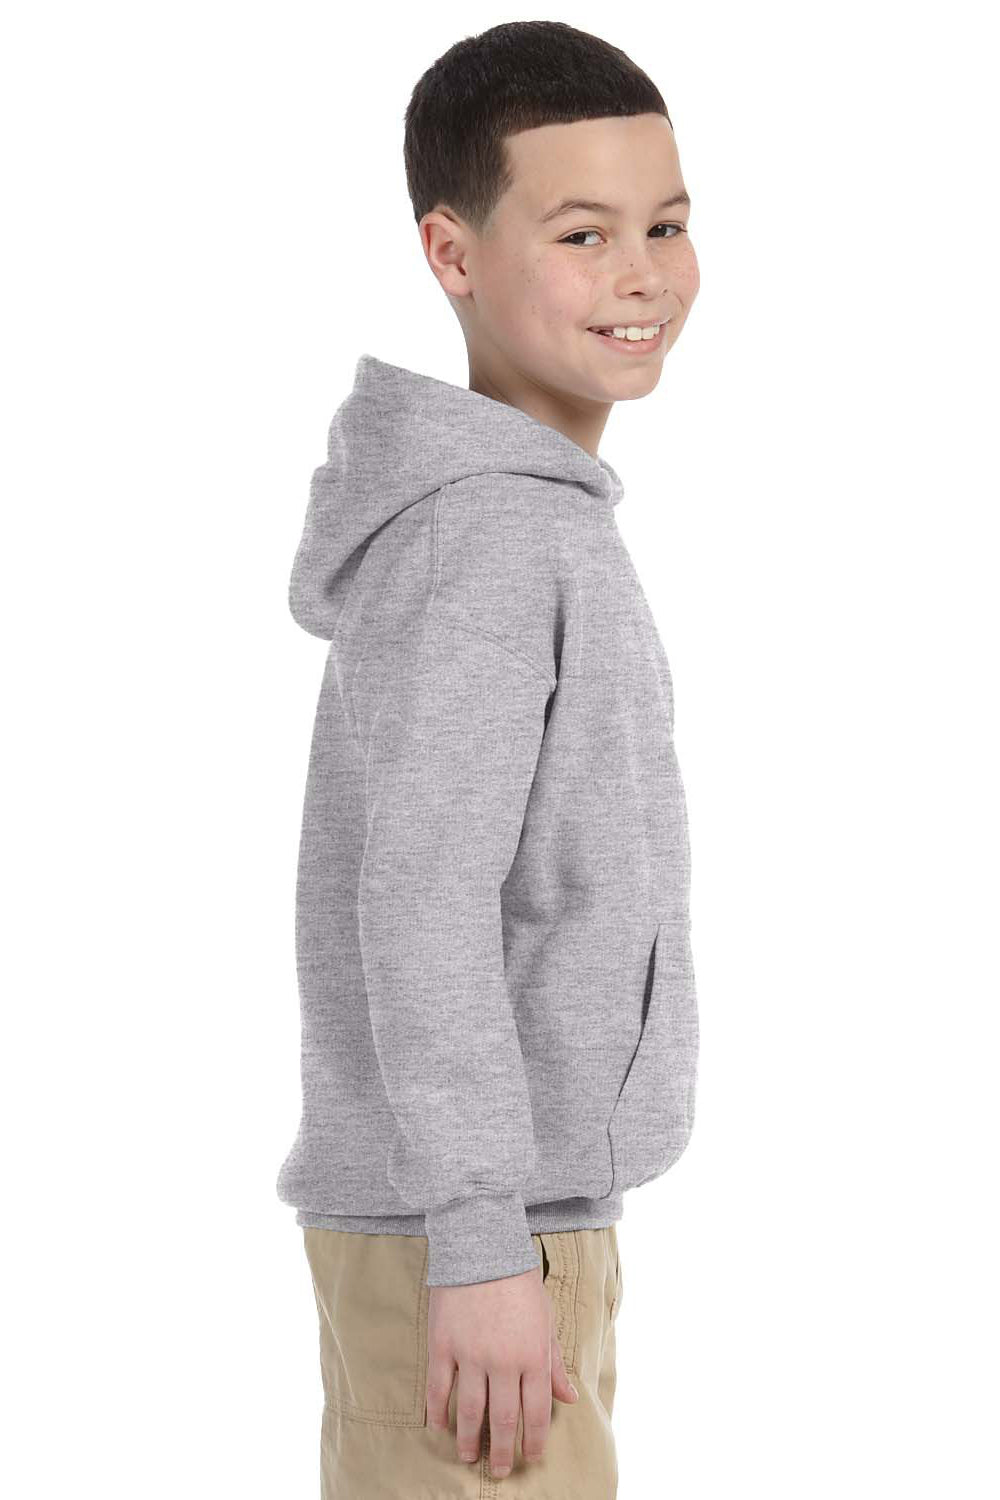 Gildan G185B Youth Hooded Sweatshirt Hoodie Sport Grey Side